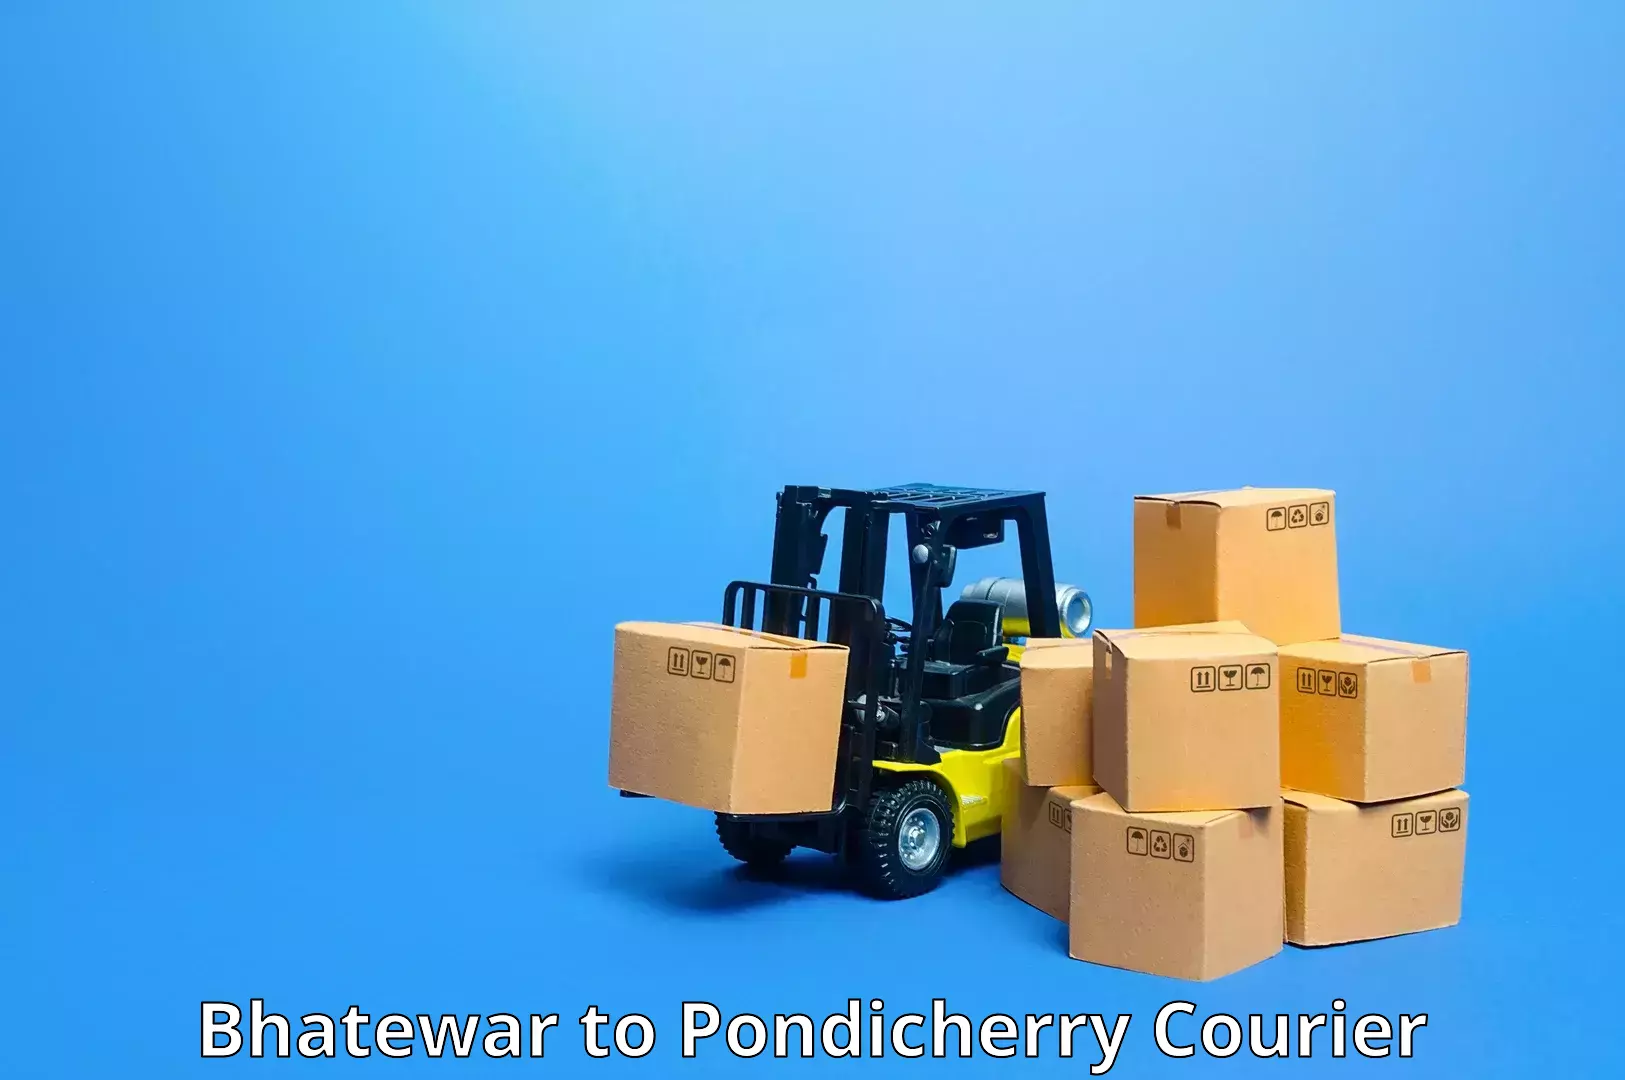 Nationwide courier service Bhatewar to Pondicherry University